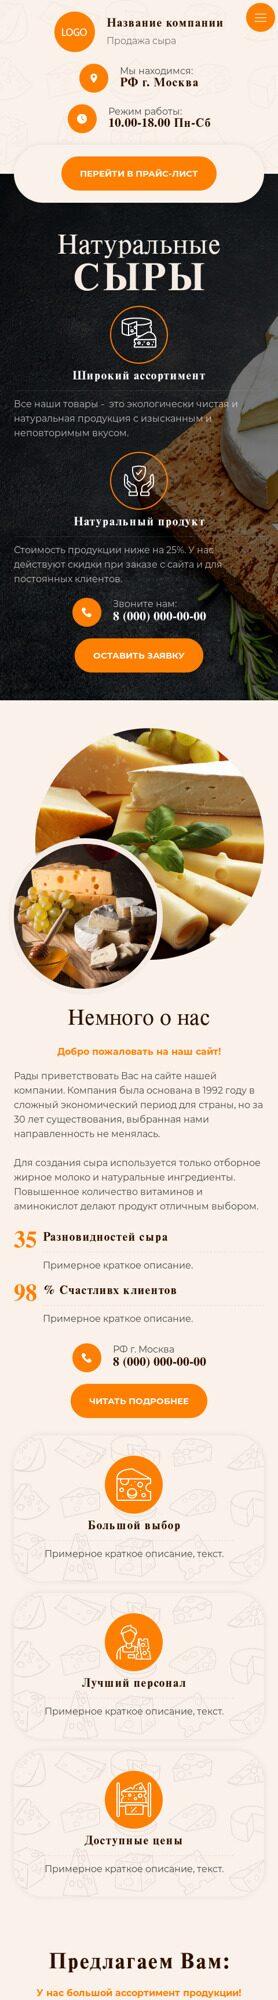 Готовый Сайт-Бизнес № 5327791 - Продажа сыра (Мобильная версия)